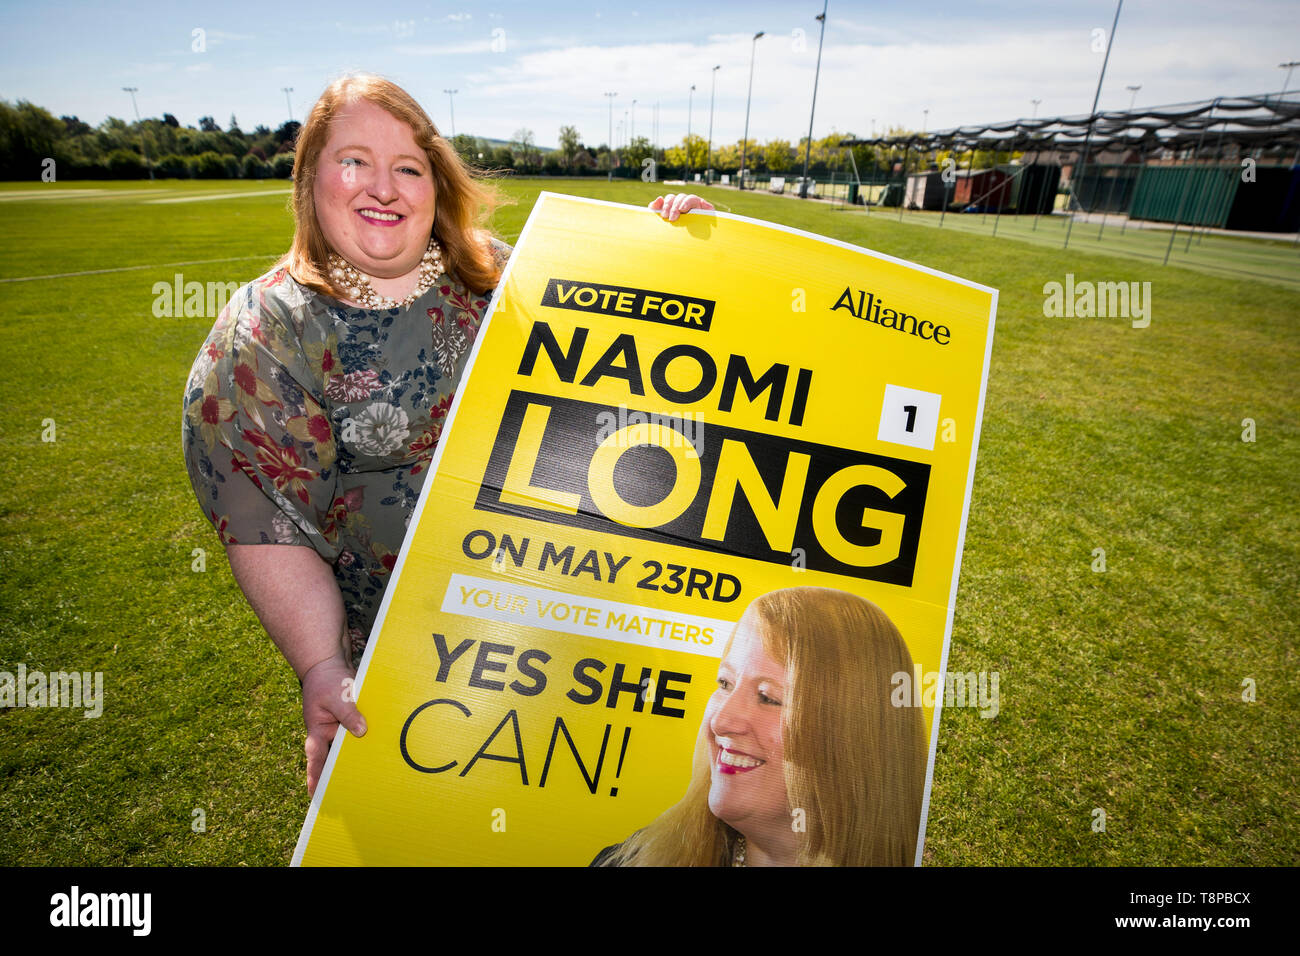 Chef du parti Alliance Naomi longtemps pendant le lancement de son offre pour l'un de l'Irlande du Nord trois sièges au Parlement européen à CIYMS les terrains de sport, dans l'est de Belfast. Banque D'Images